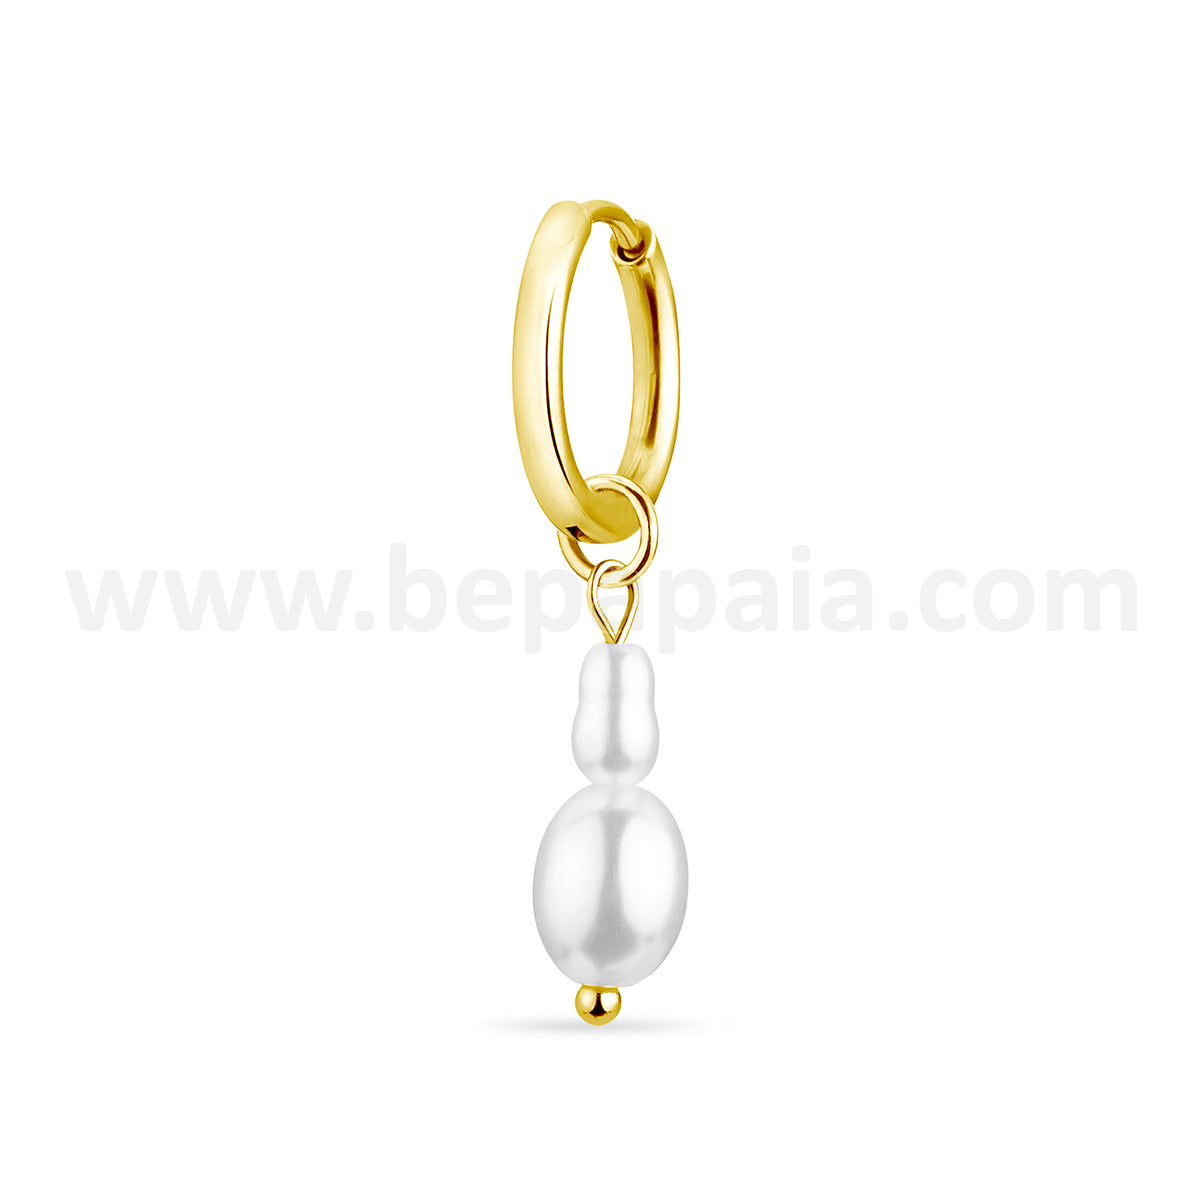 Cerchio dorato con perle di design assortiti
